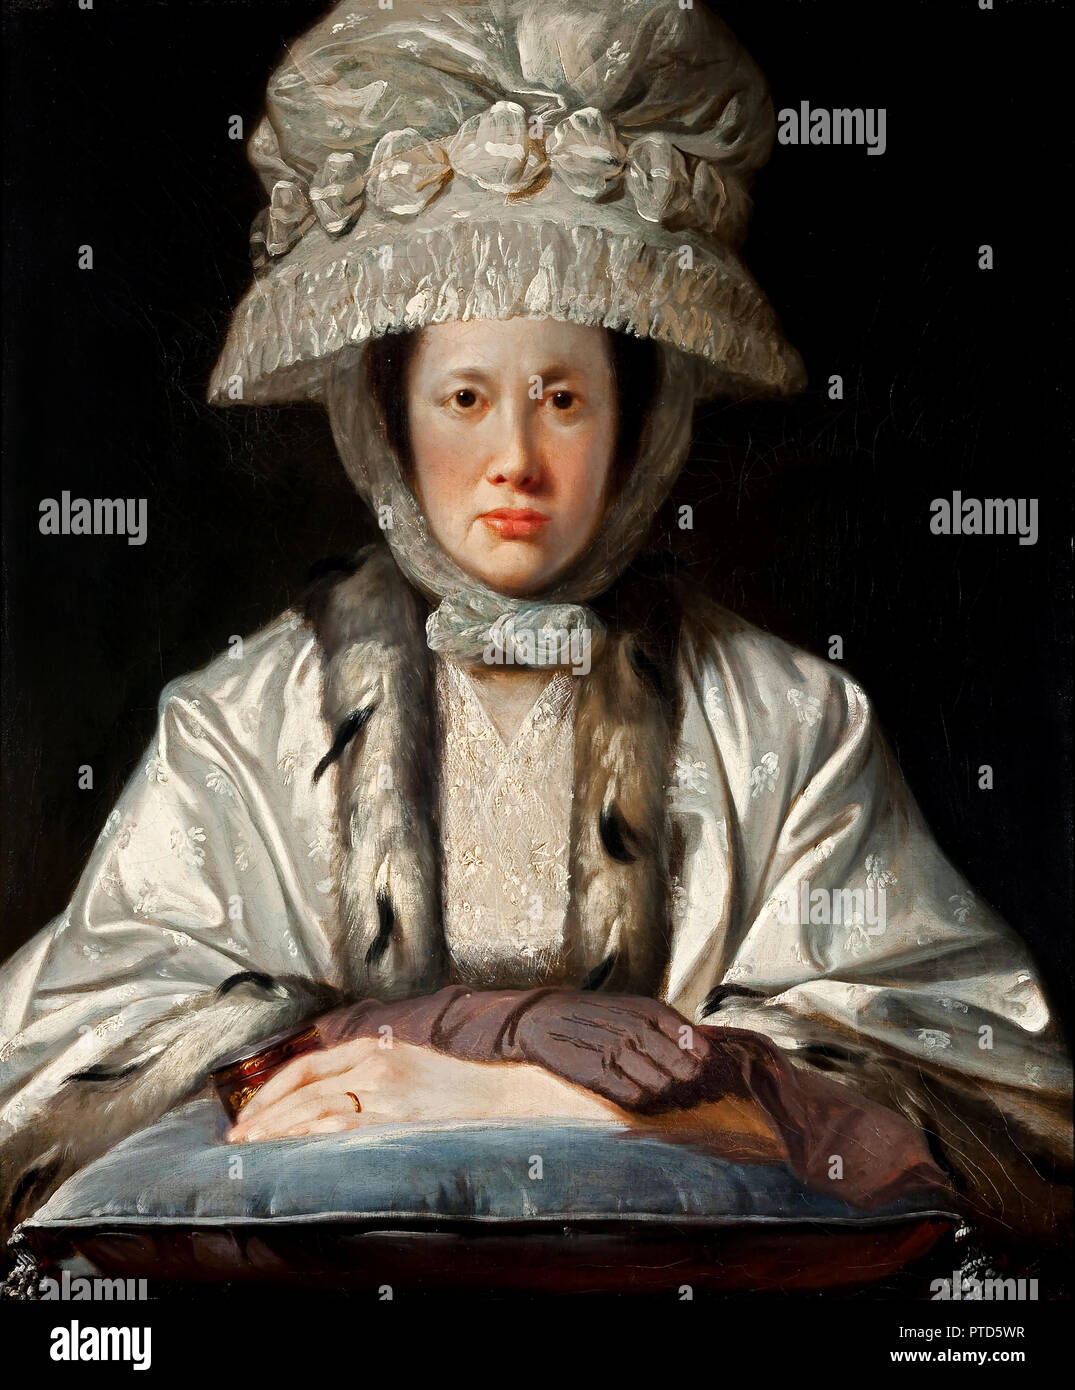 Tilly électrique, Portrait de Anne Howard-Vyse 1780 Huile sur toile, Auckland Art Gallery Toi o Tamaki, Auckland, Nouvelle-Zélande. Banque D'Images